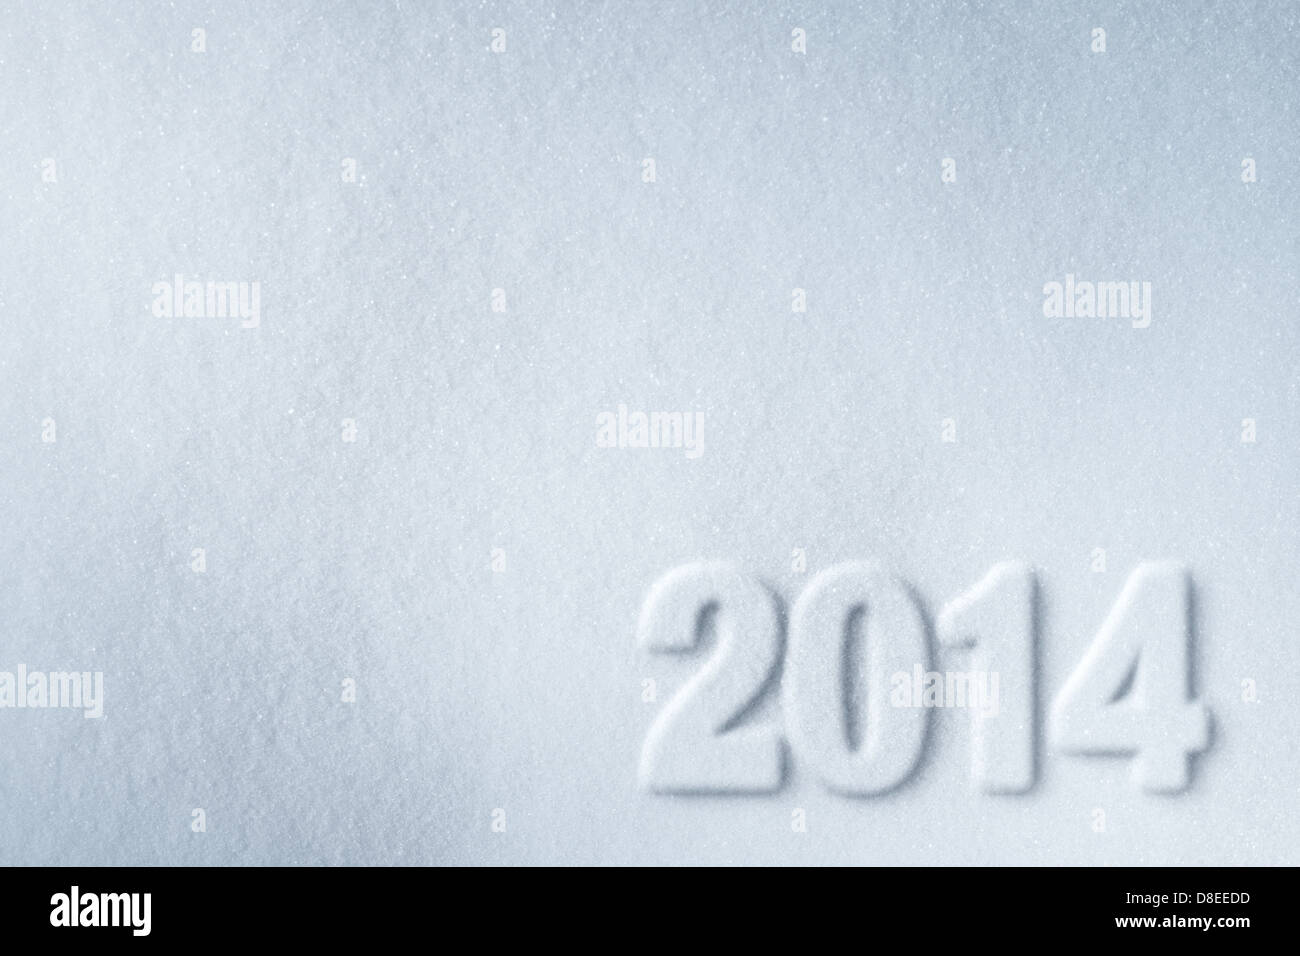 2014 año nuevo símbolo impreso sobre fondo de nieve Foto de stock